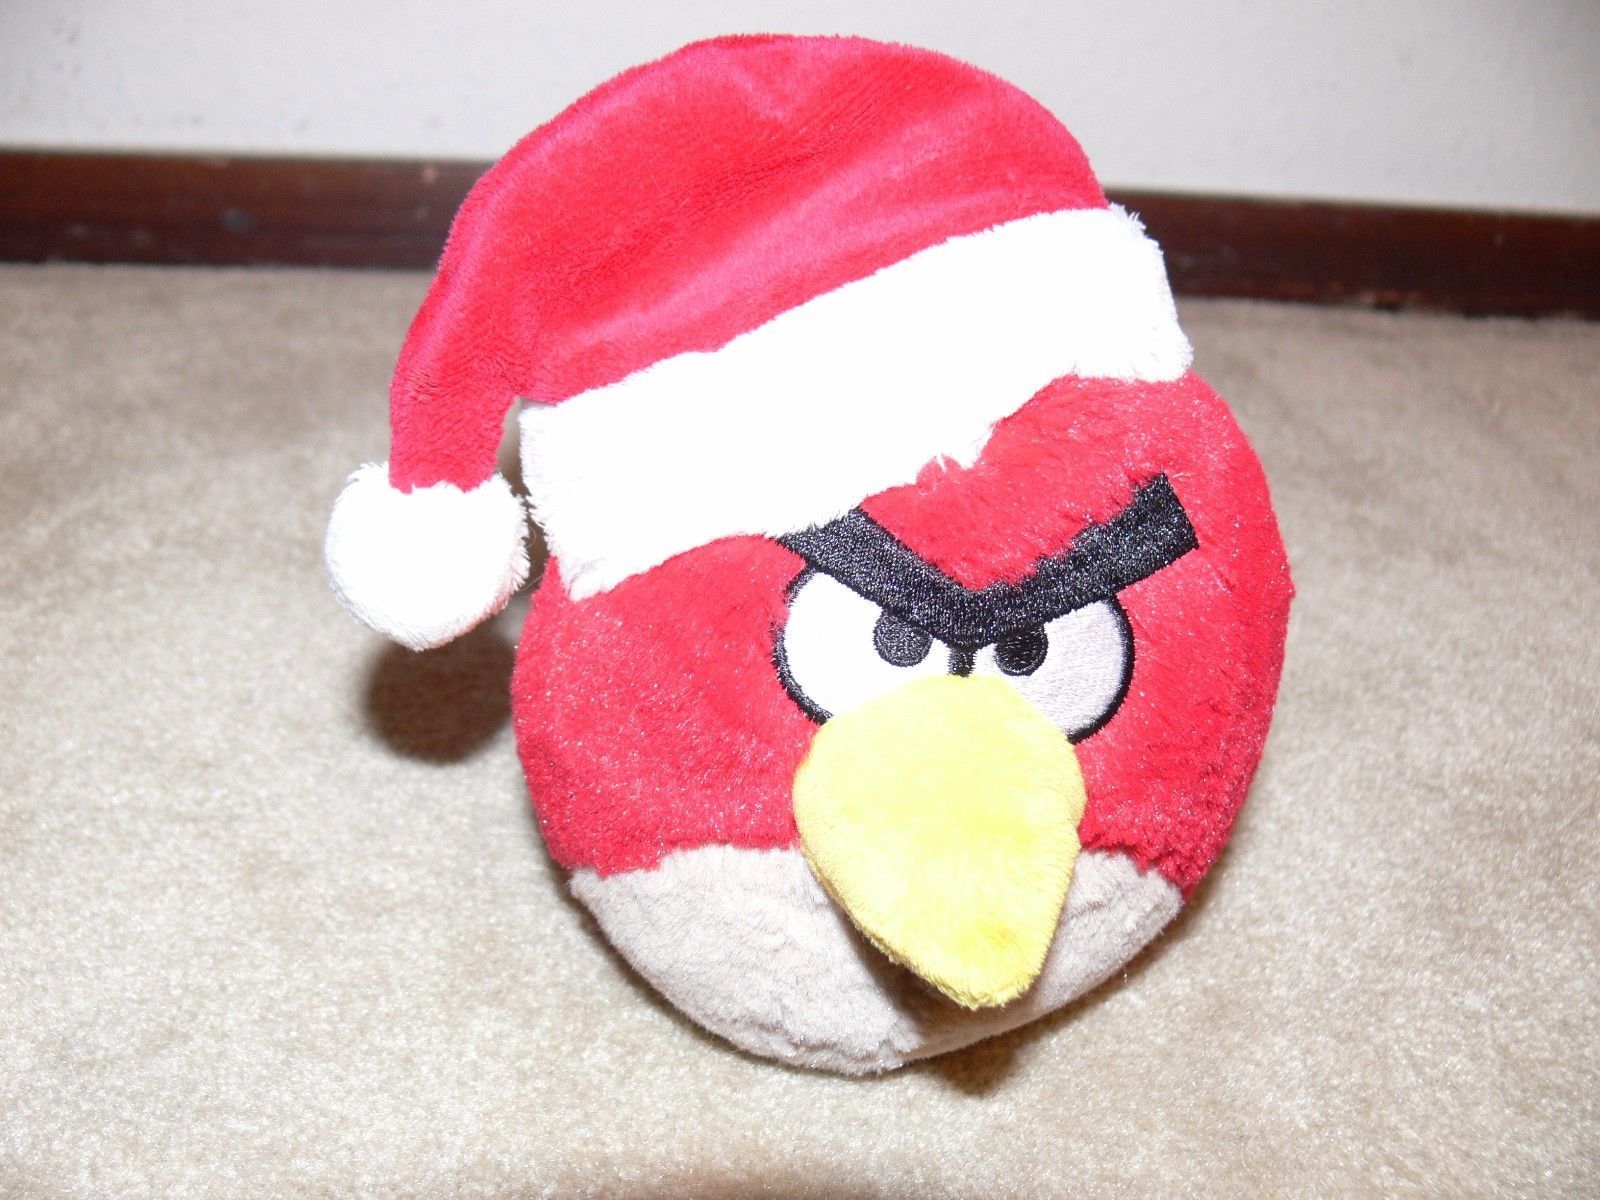 Angry Birds Christmas Wallpaper